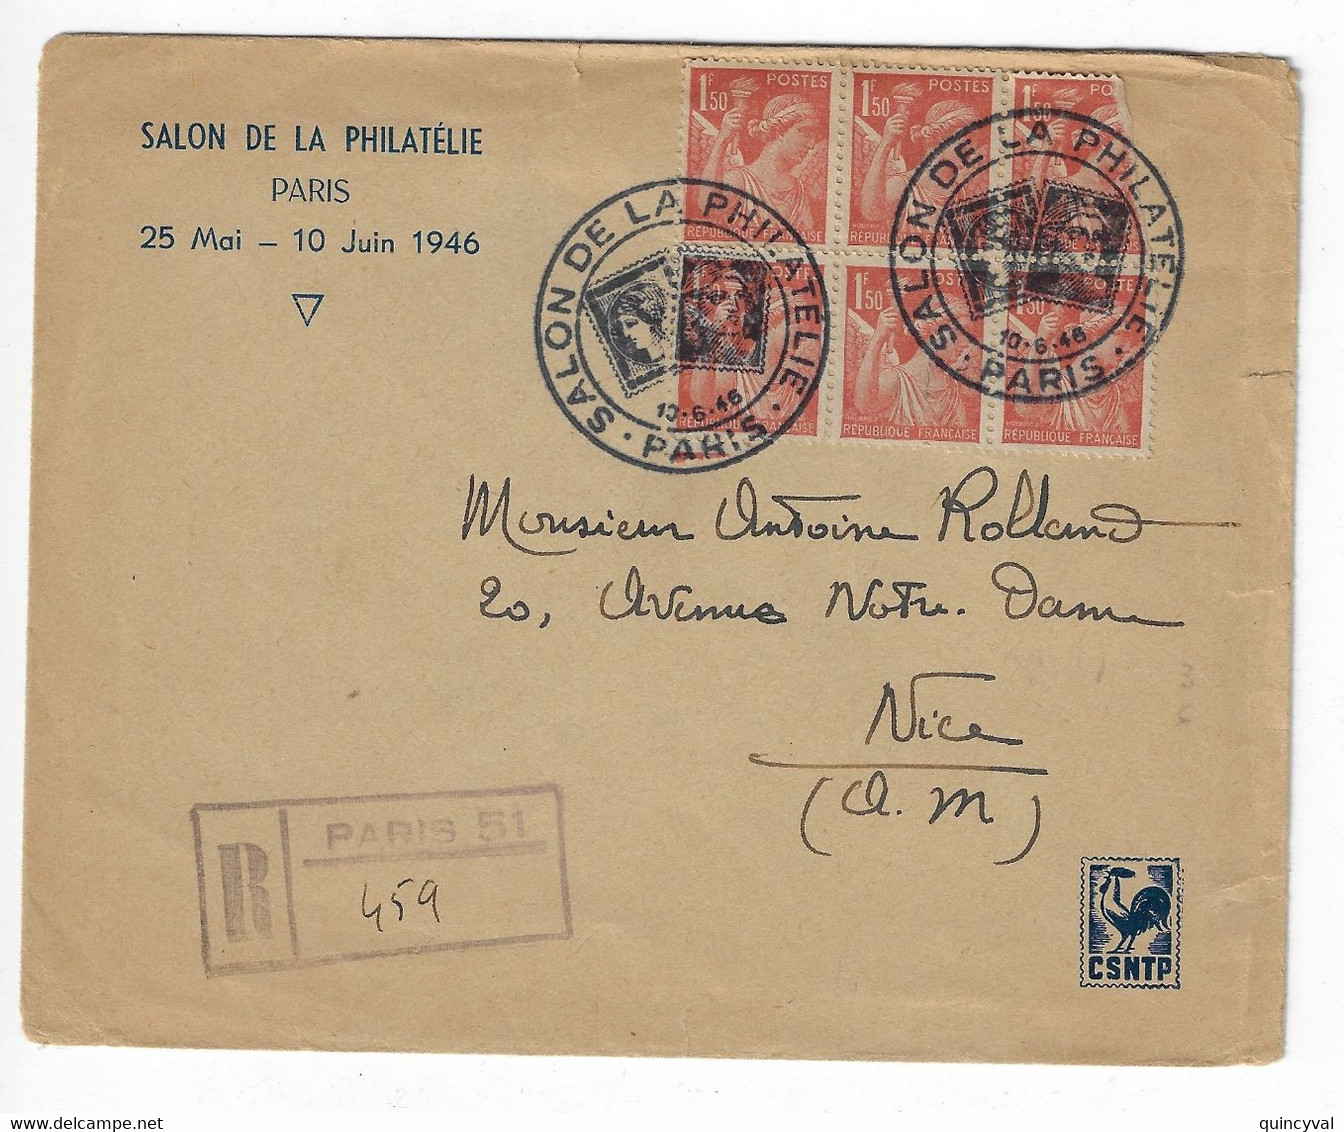 PARIS SALON DE LA PHILATELIE CSNTP 1946 Lettre Recommandée Grille Pas Etiquette Bureau Temporaire 1,50 F Iris Yv 652 - Bolli Commemorativi